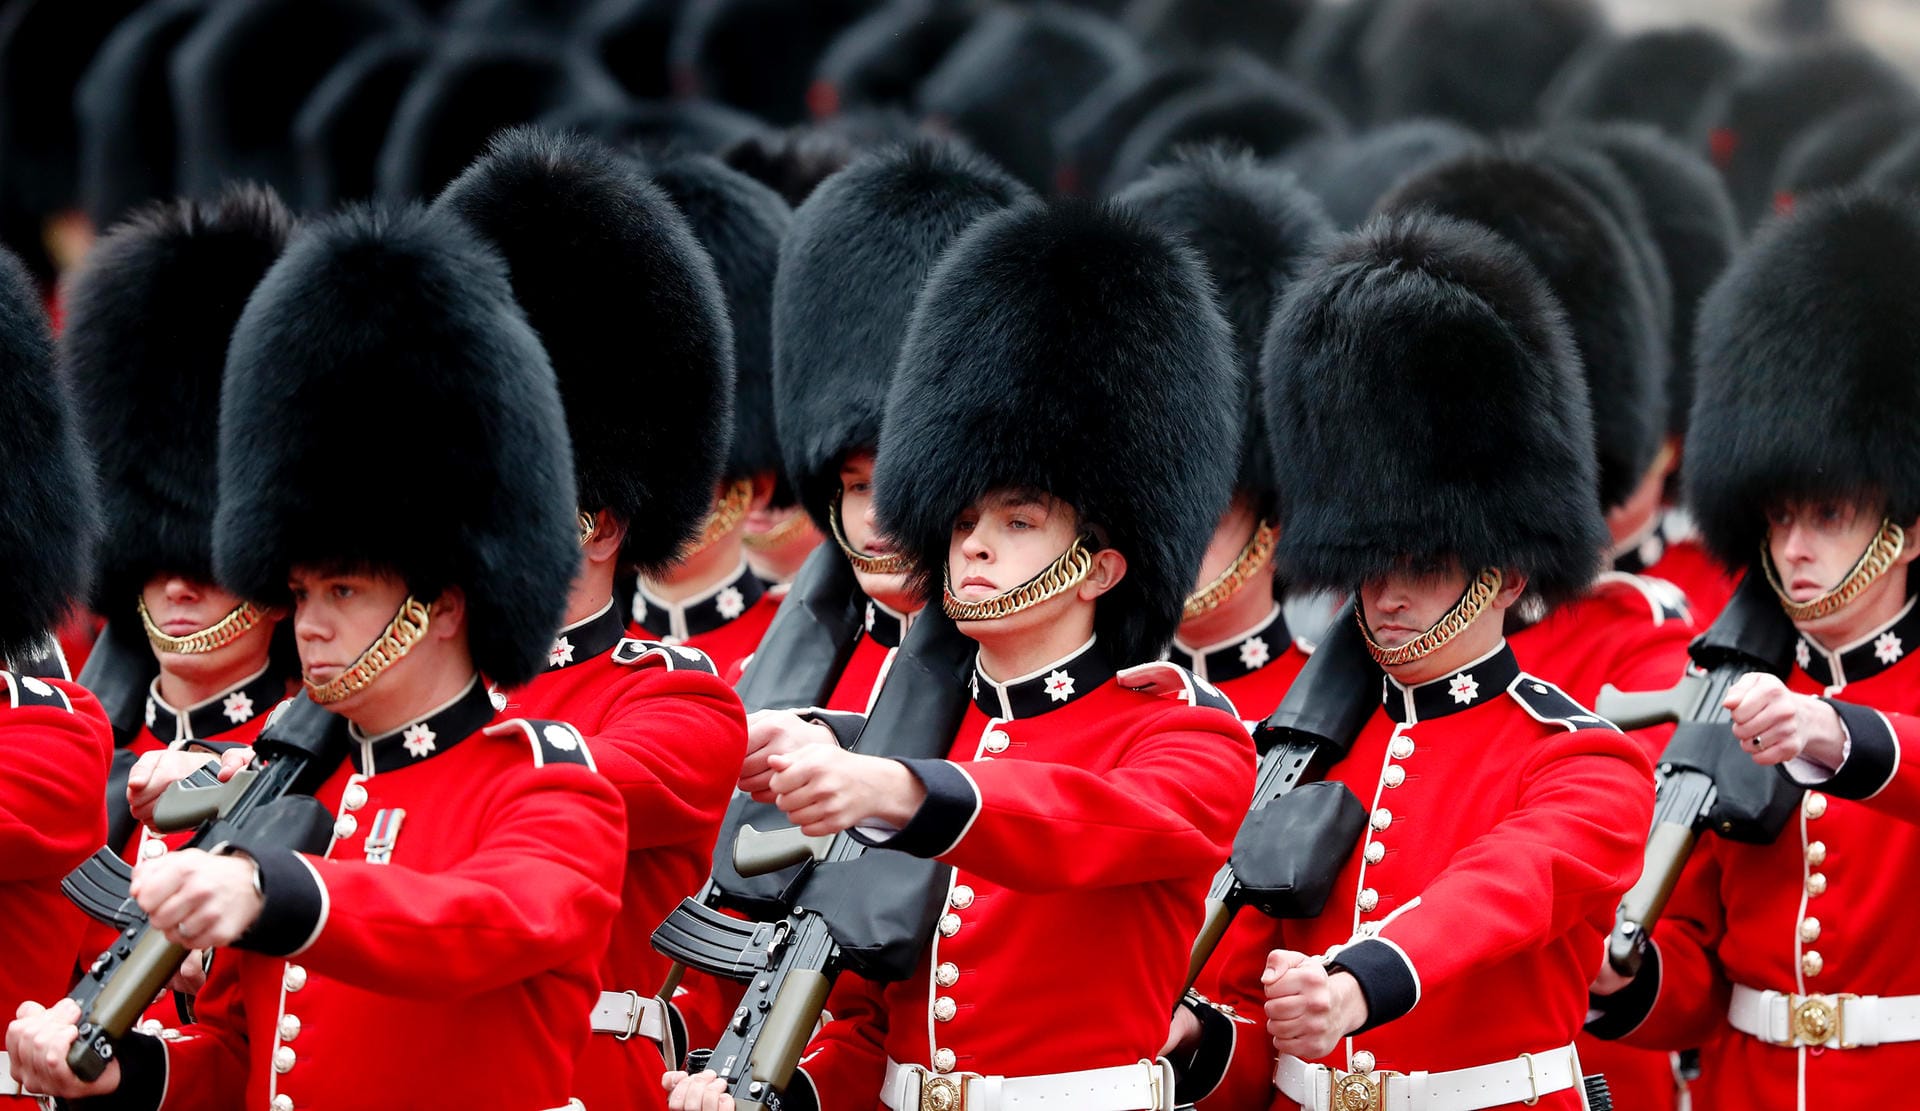 Dutzende Grenadier Guards marschieren bei der Parade auf.